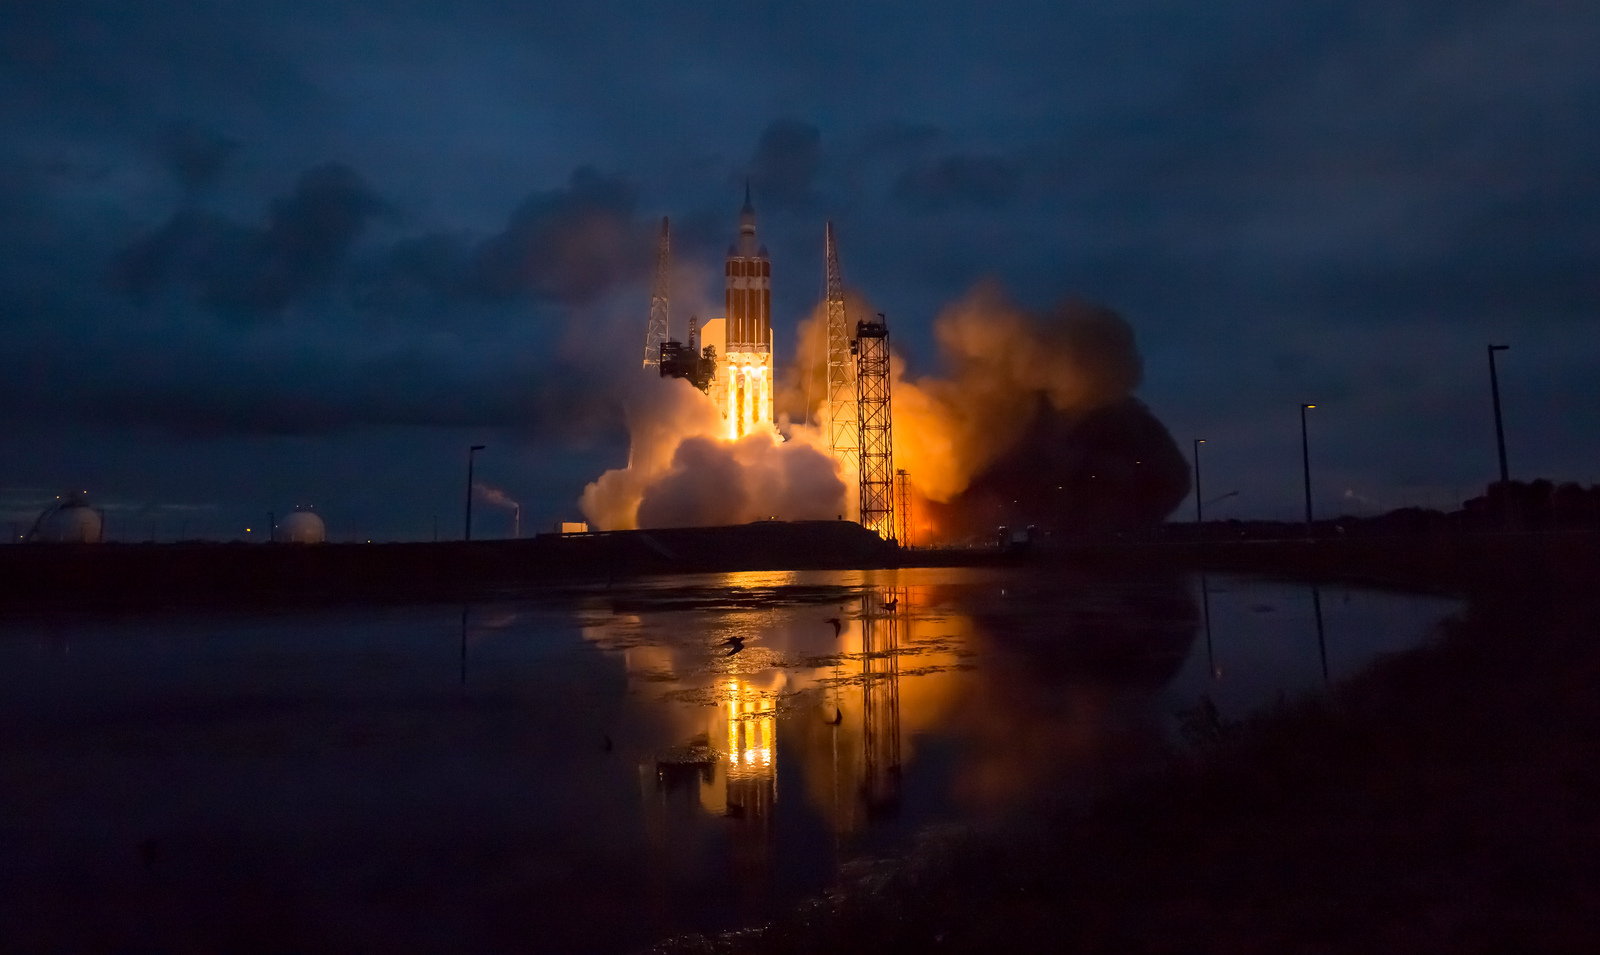 Il lancio da Cape Canaveral del razzo Delta IV Heavy per la missione Orion EFT-1 della NASA. Credit: NASA/Bill Ingalls